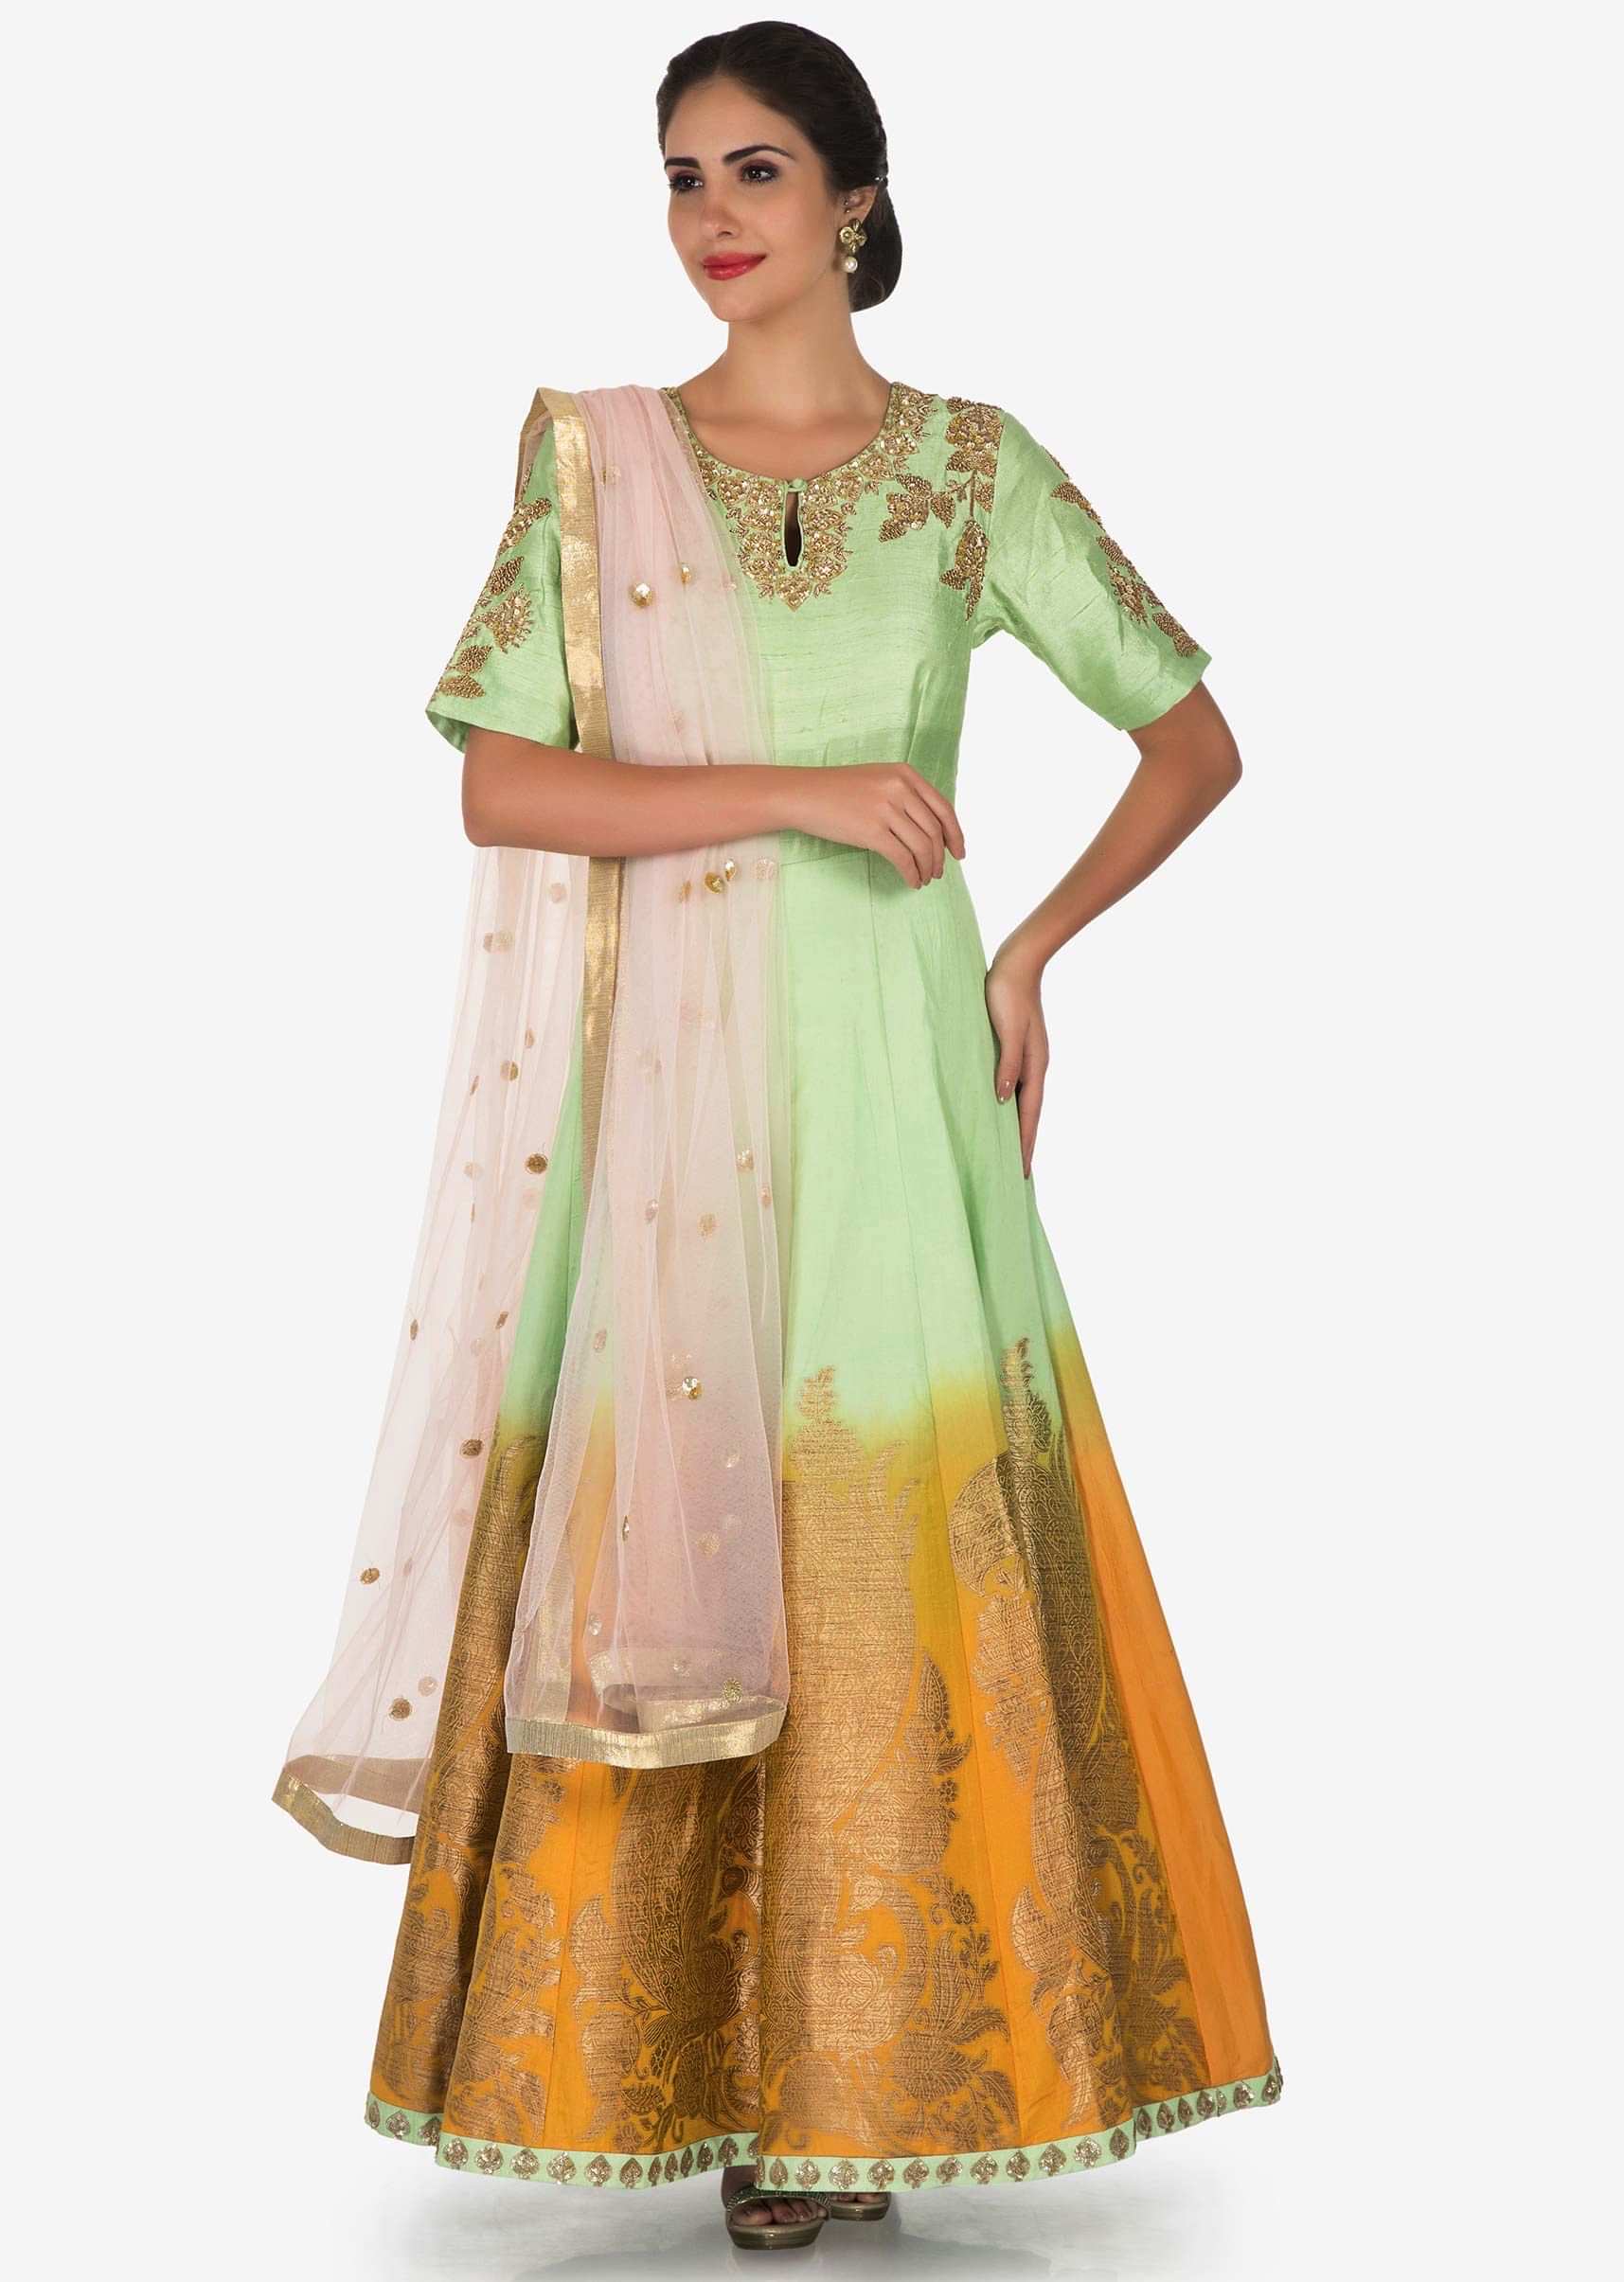 Pista Green Suit With Pink Dupatta Adorn In Zardosi And Sequin Work Online - Kalki Fashion